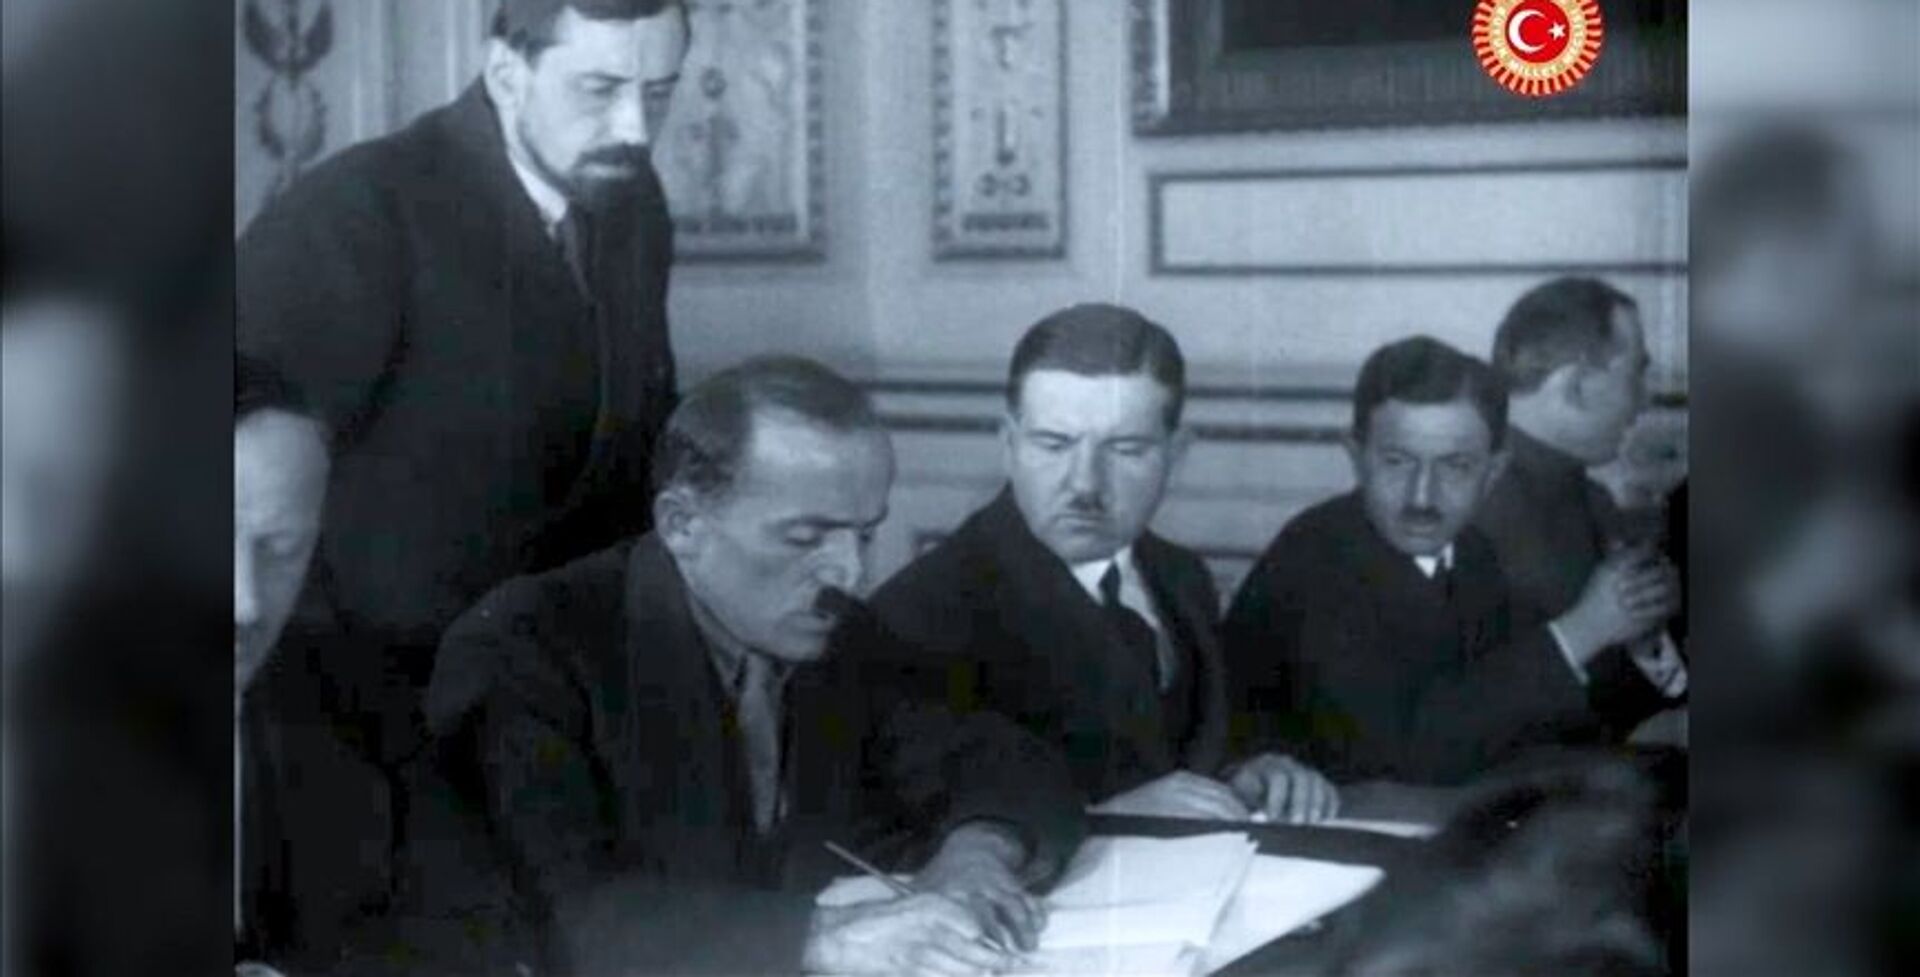 TBMM Başkanlığı, Moskova Antlaşmasının tarihi görüntülerini paylaştı - Sputnik Türkiye, 1920, 15.03.2021